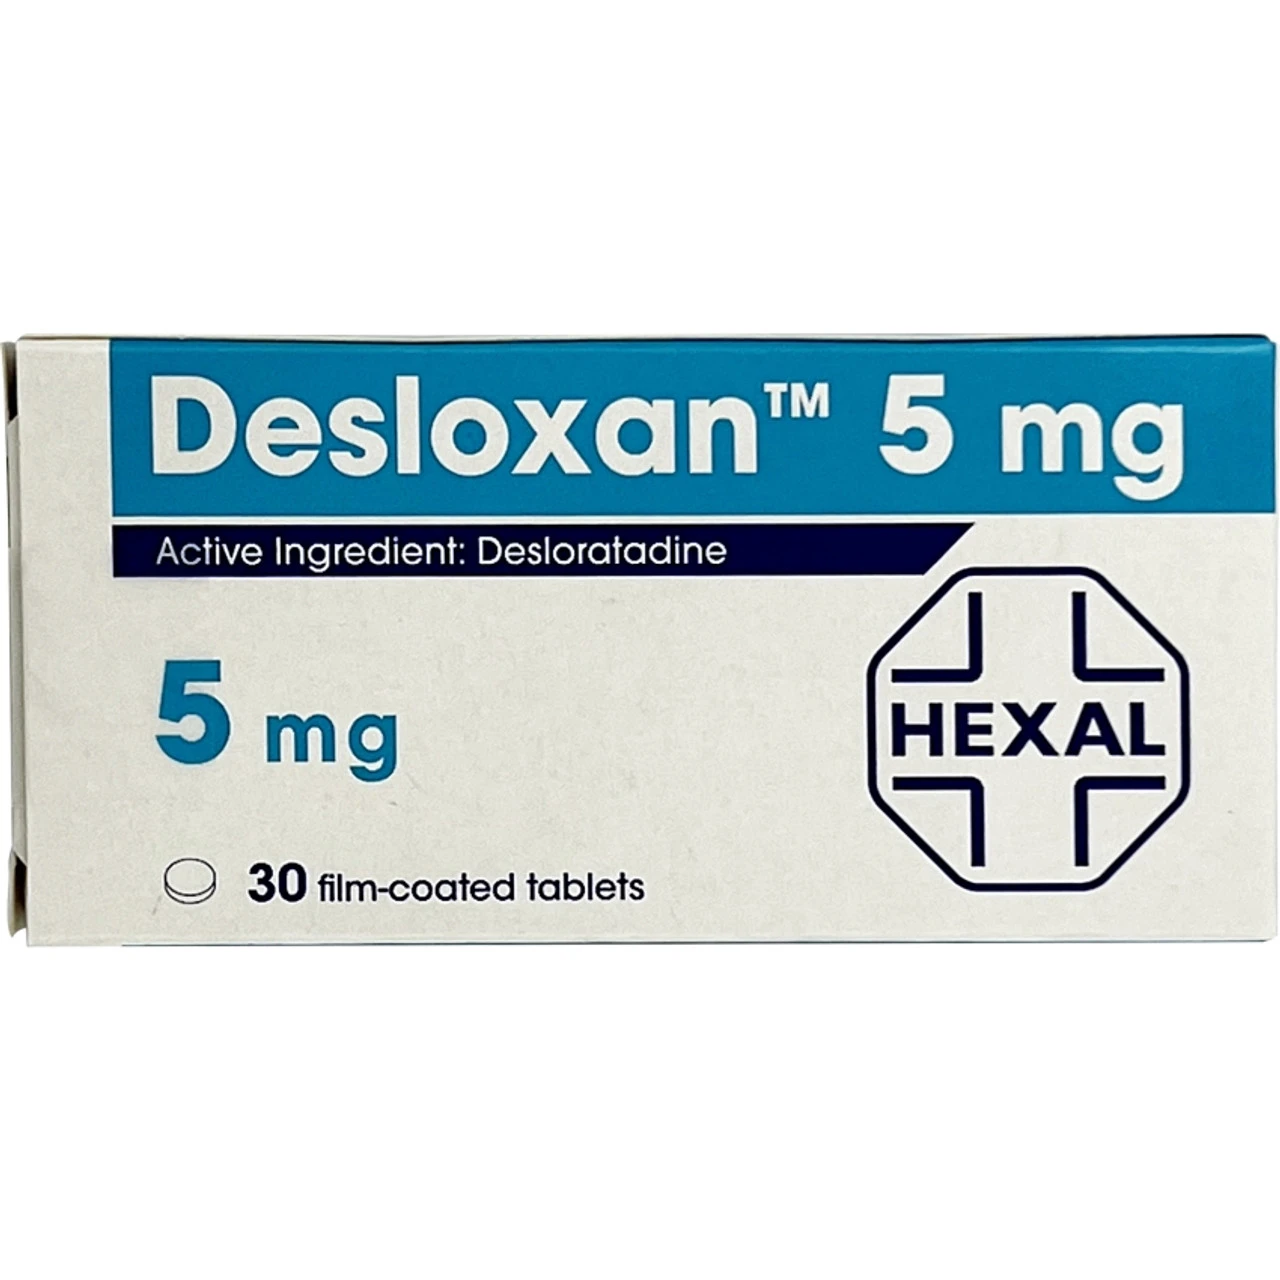 desloxan 5 mg uses